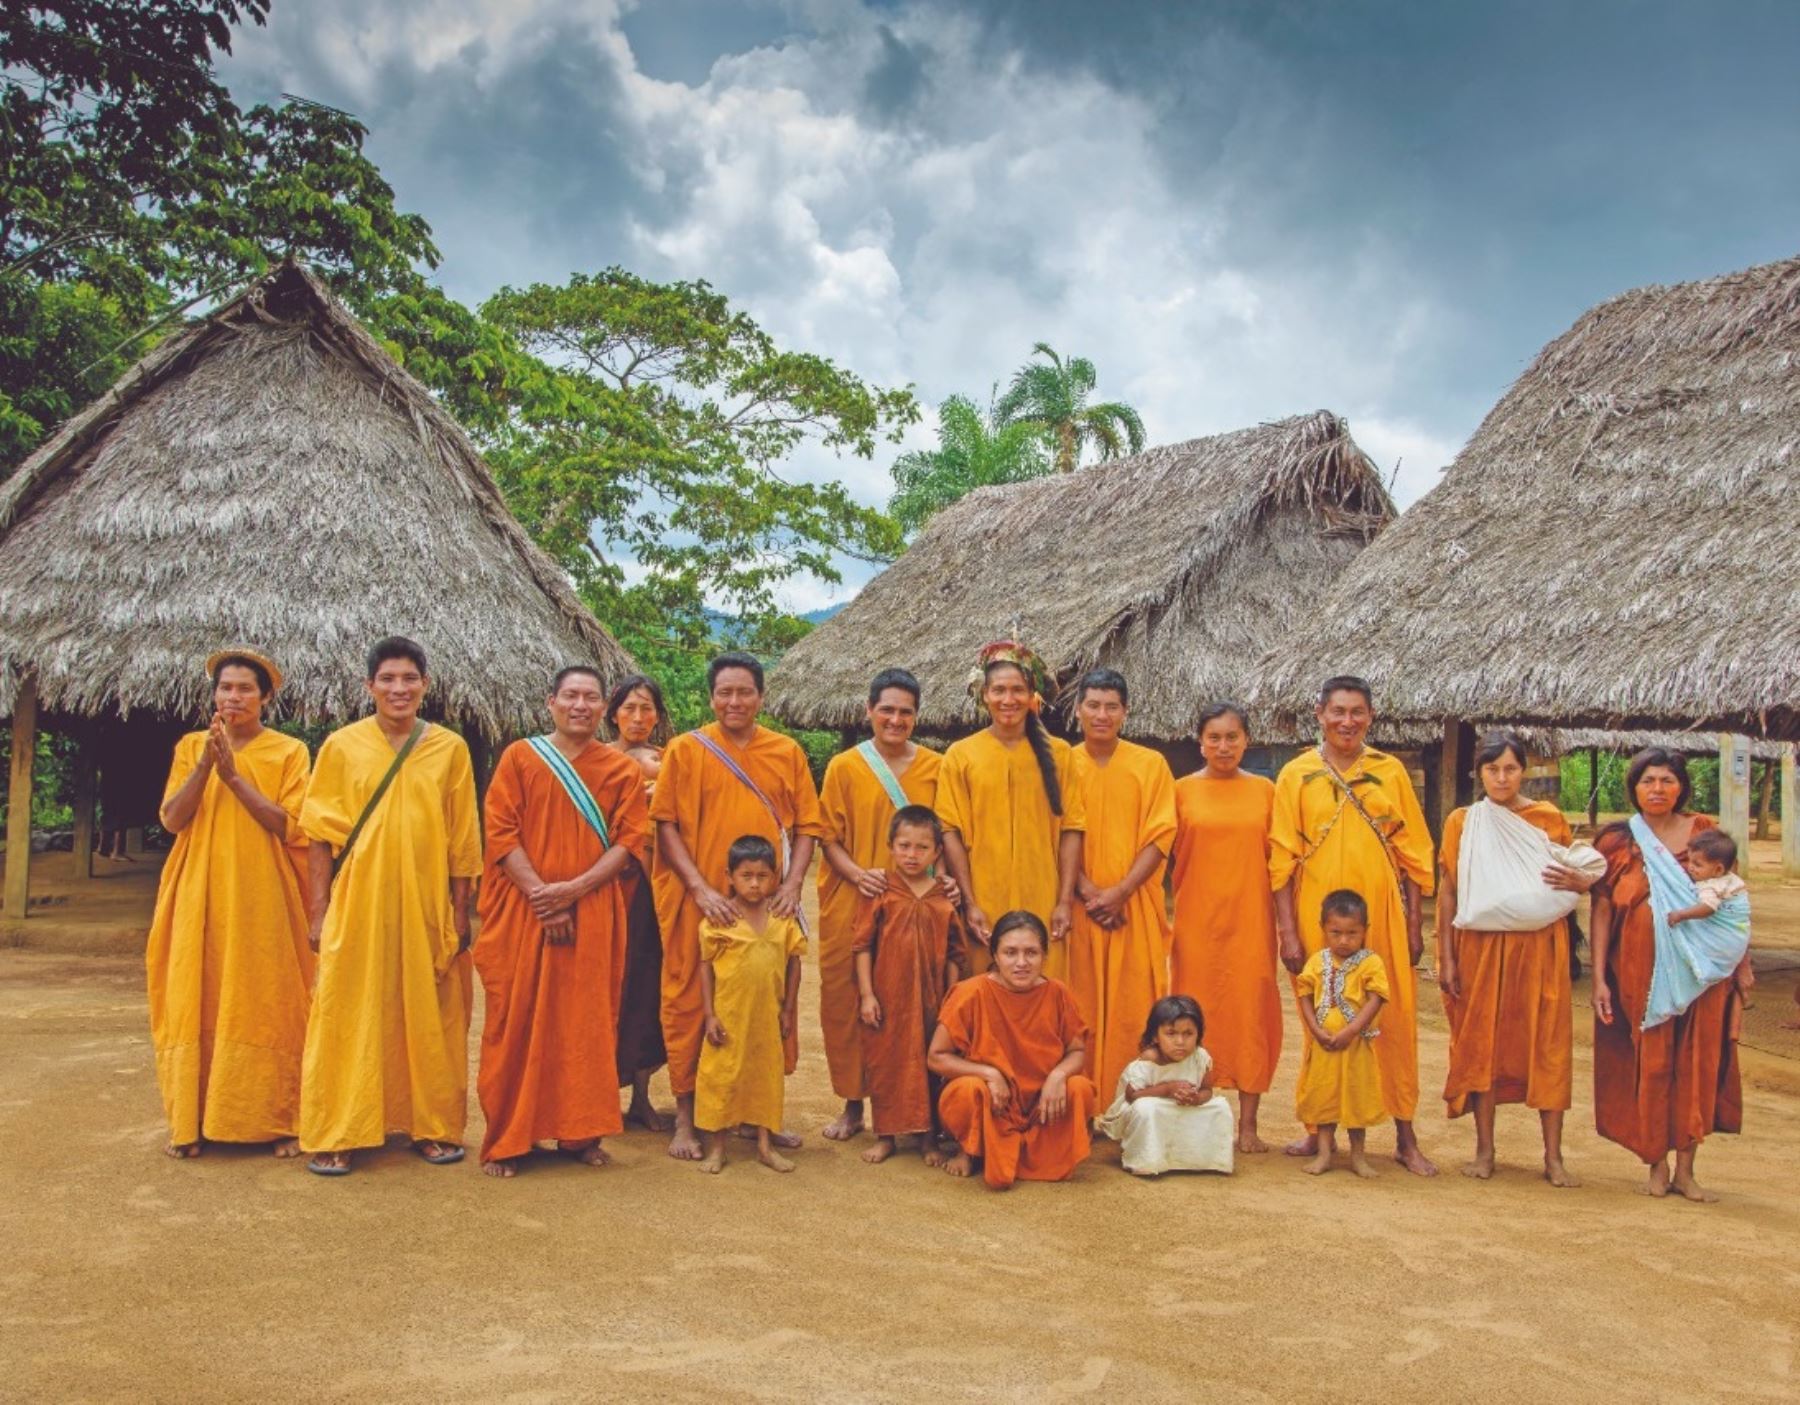 Midagri destaca entrega de títulos de propiedad a 58 comunidades indígenas que se dedican a la agricultura familiar.